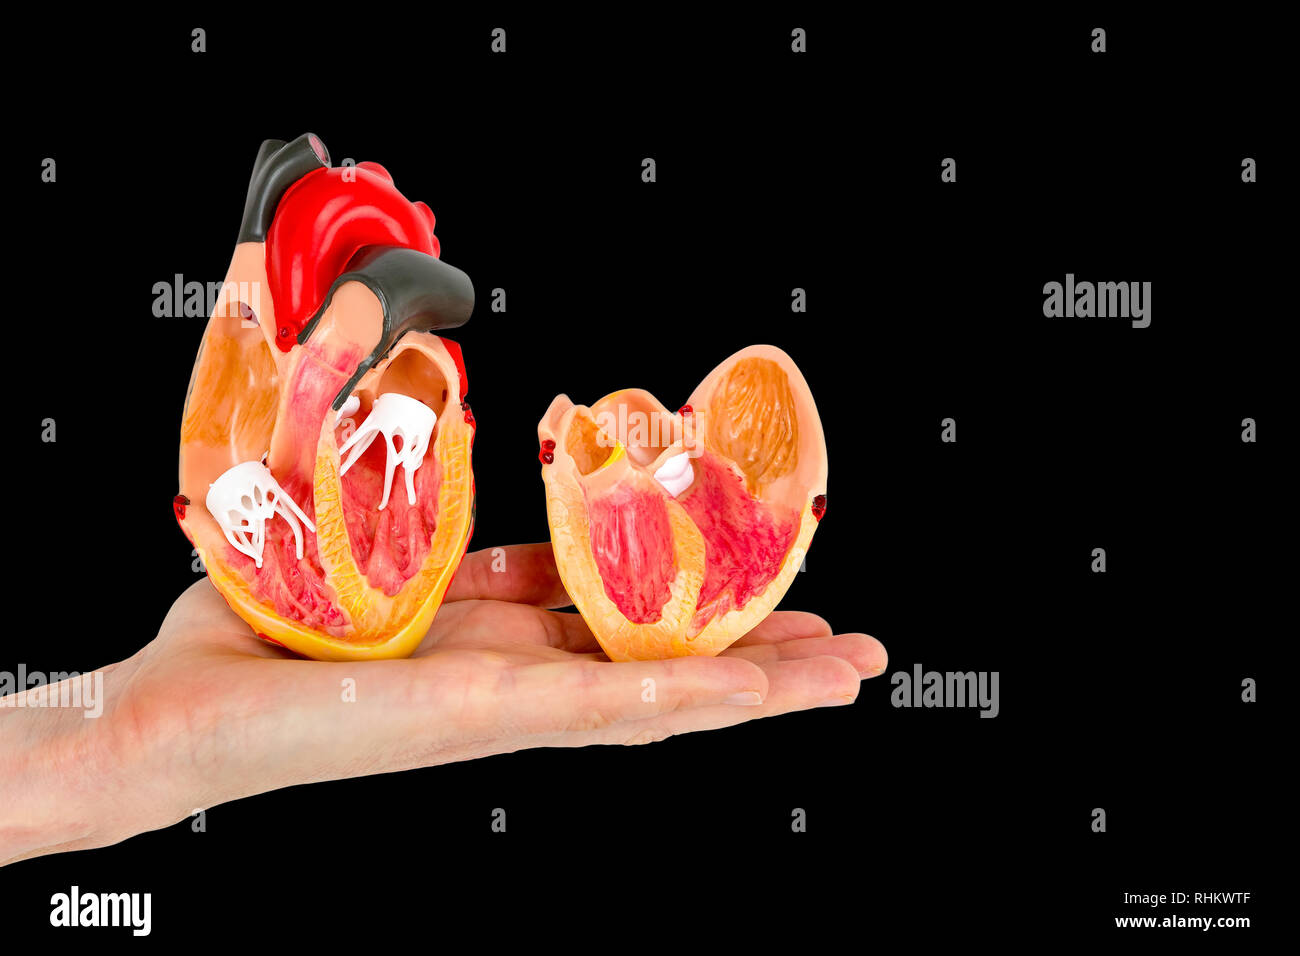 Muestra de mano dentro del corazón humano modelo aislado sobre fondo negro Foto de stock